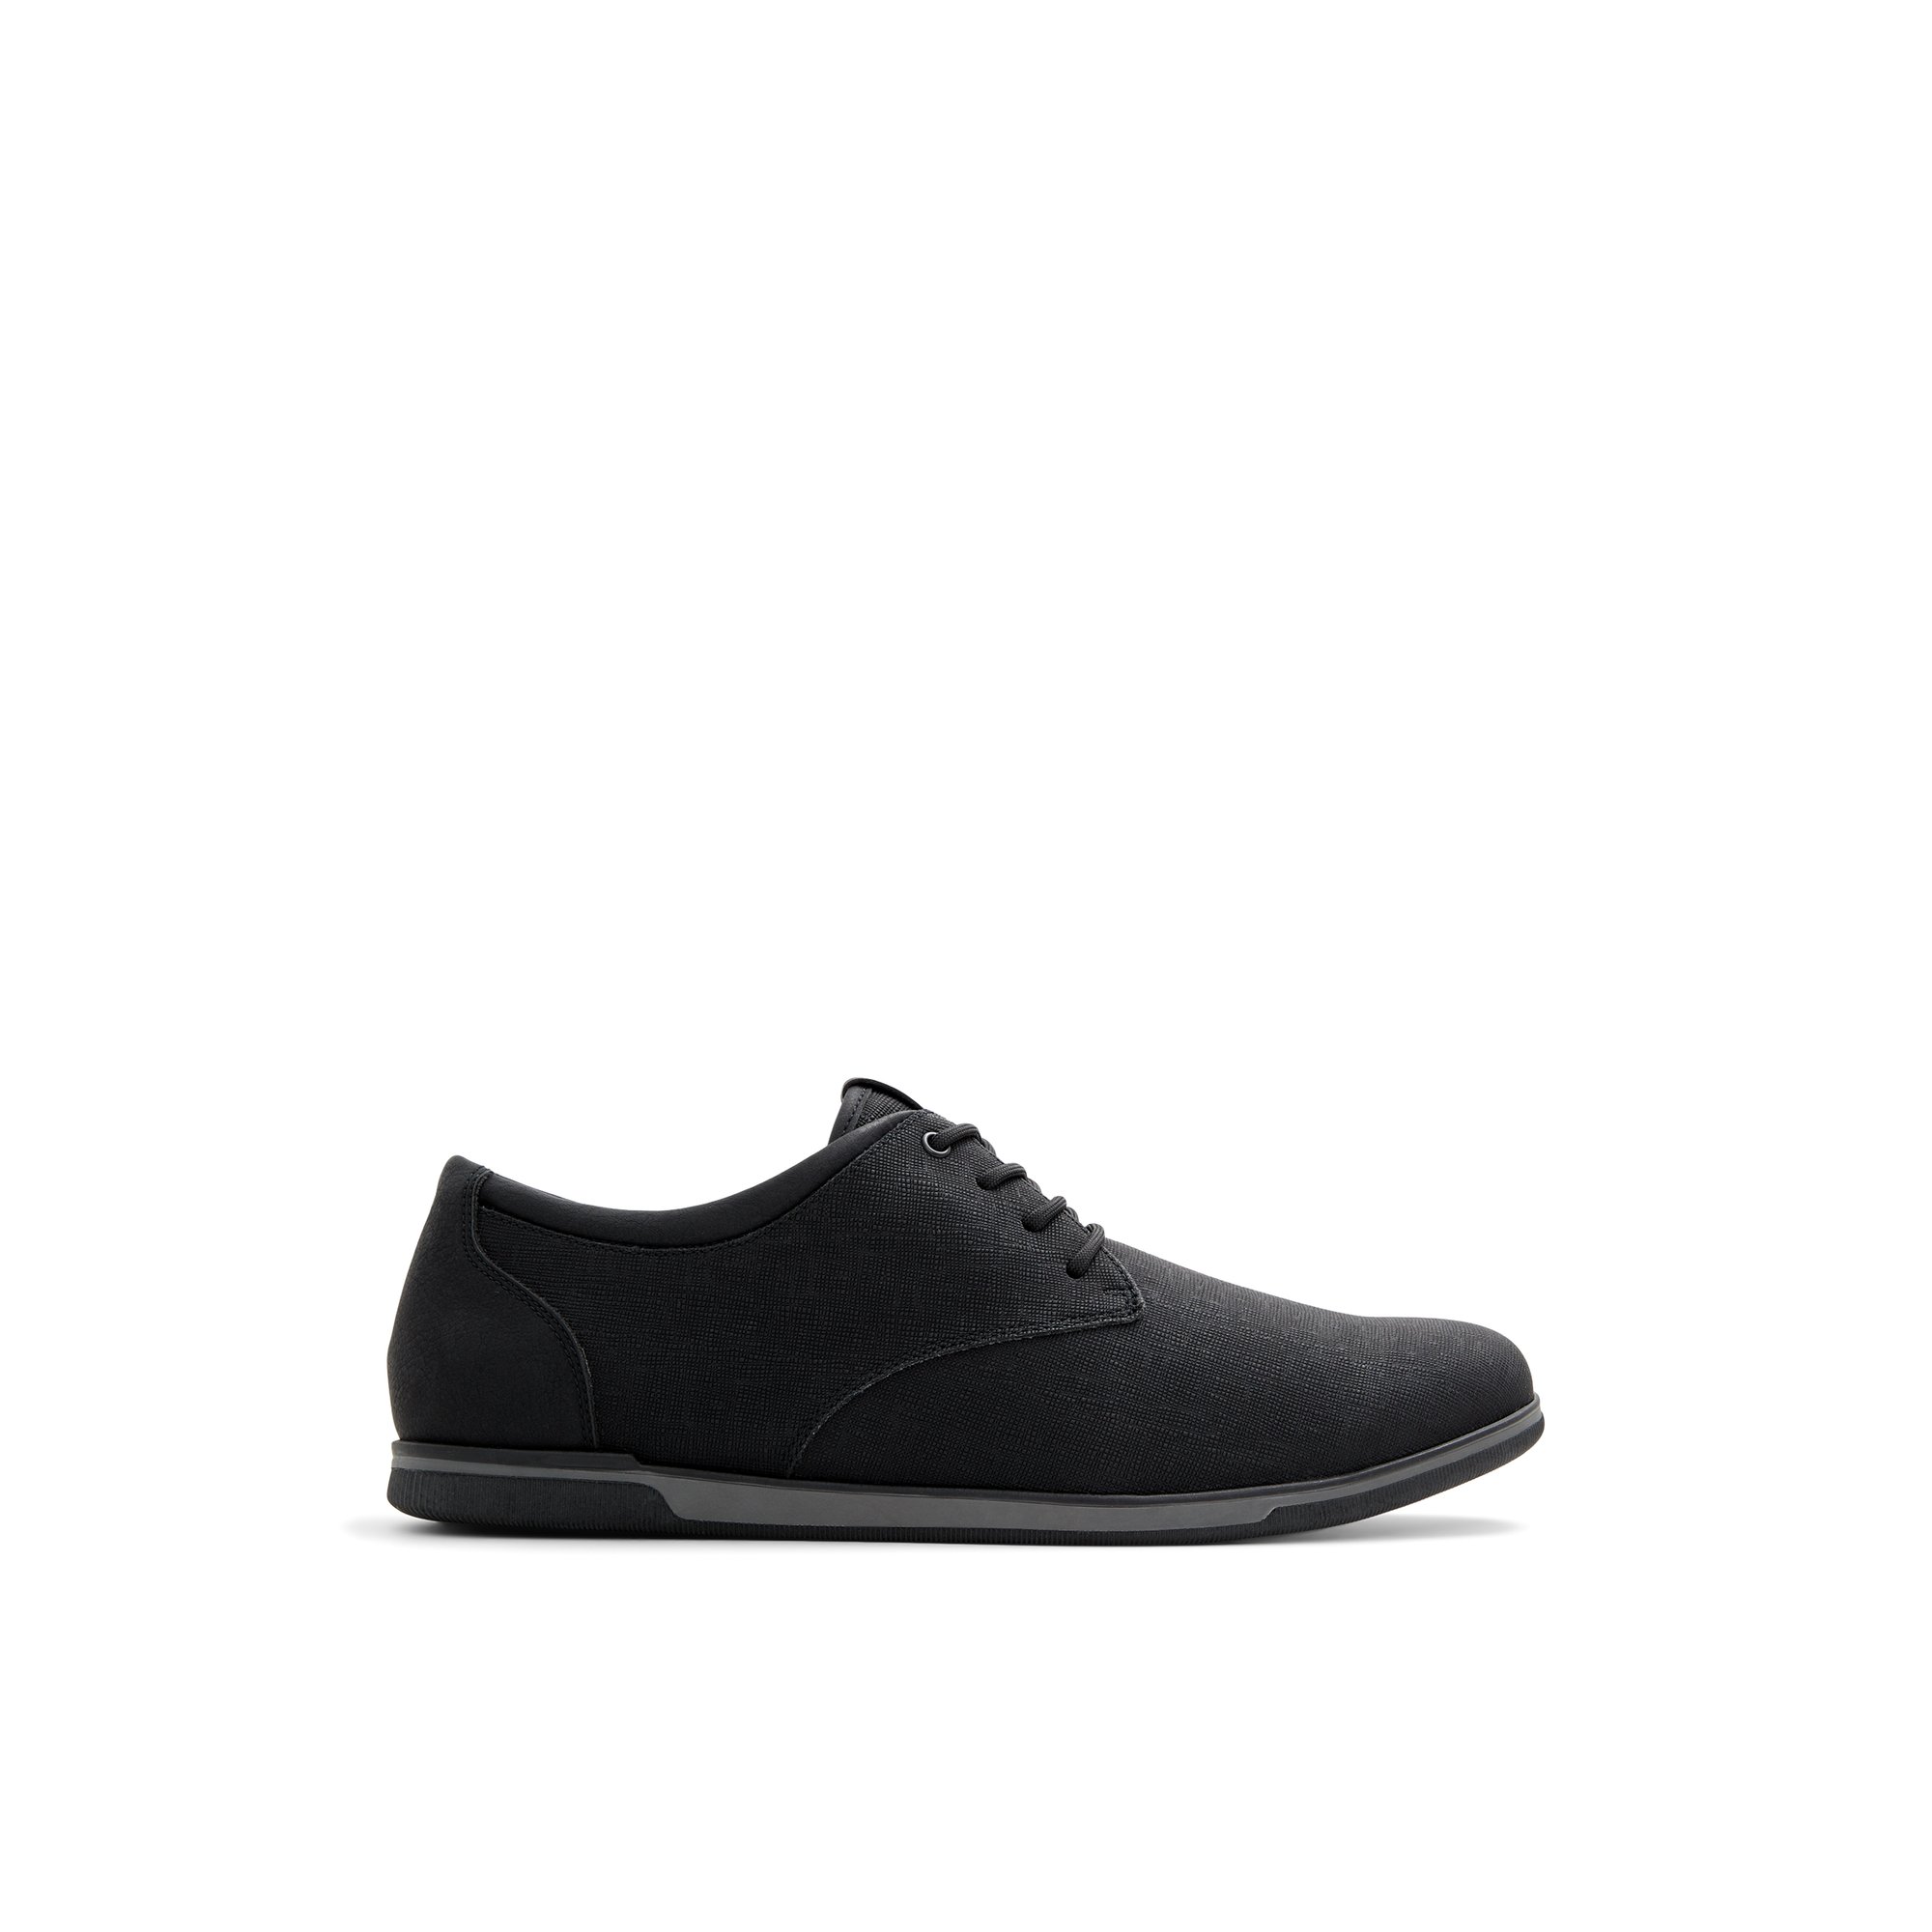 ALDO Heron - Men's Low Top Sneakers - Black